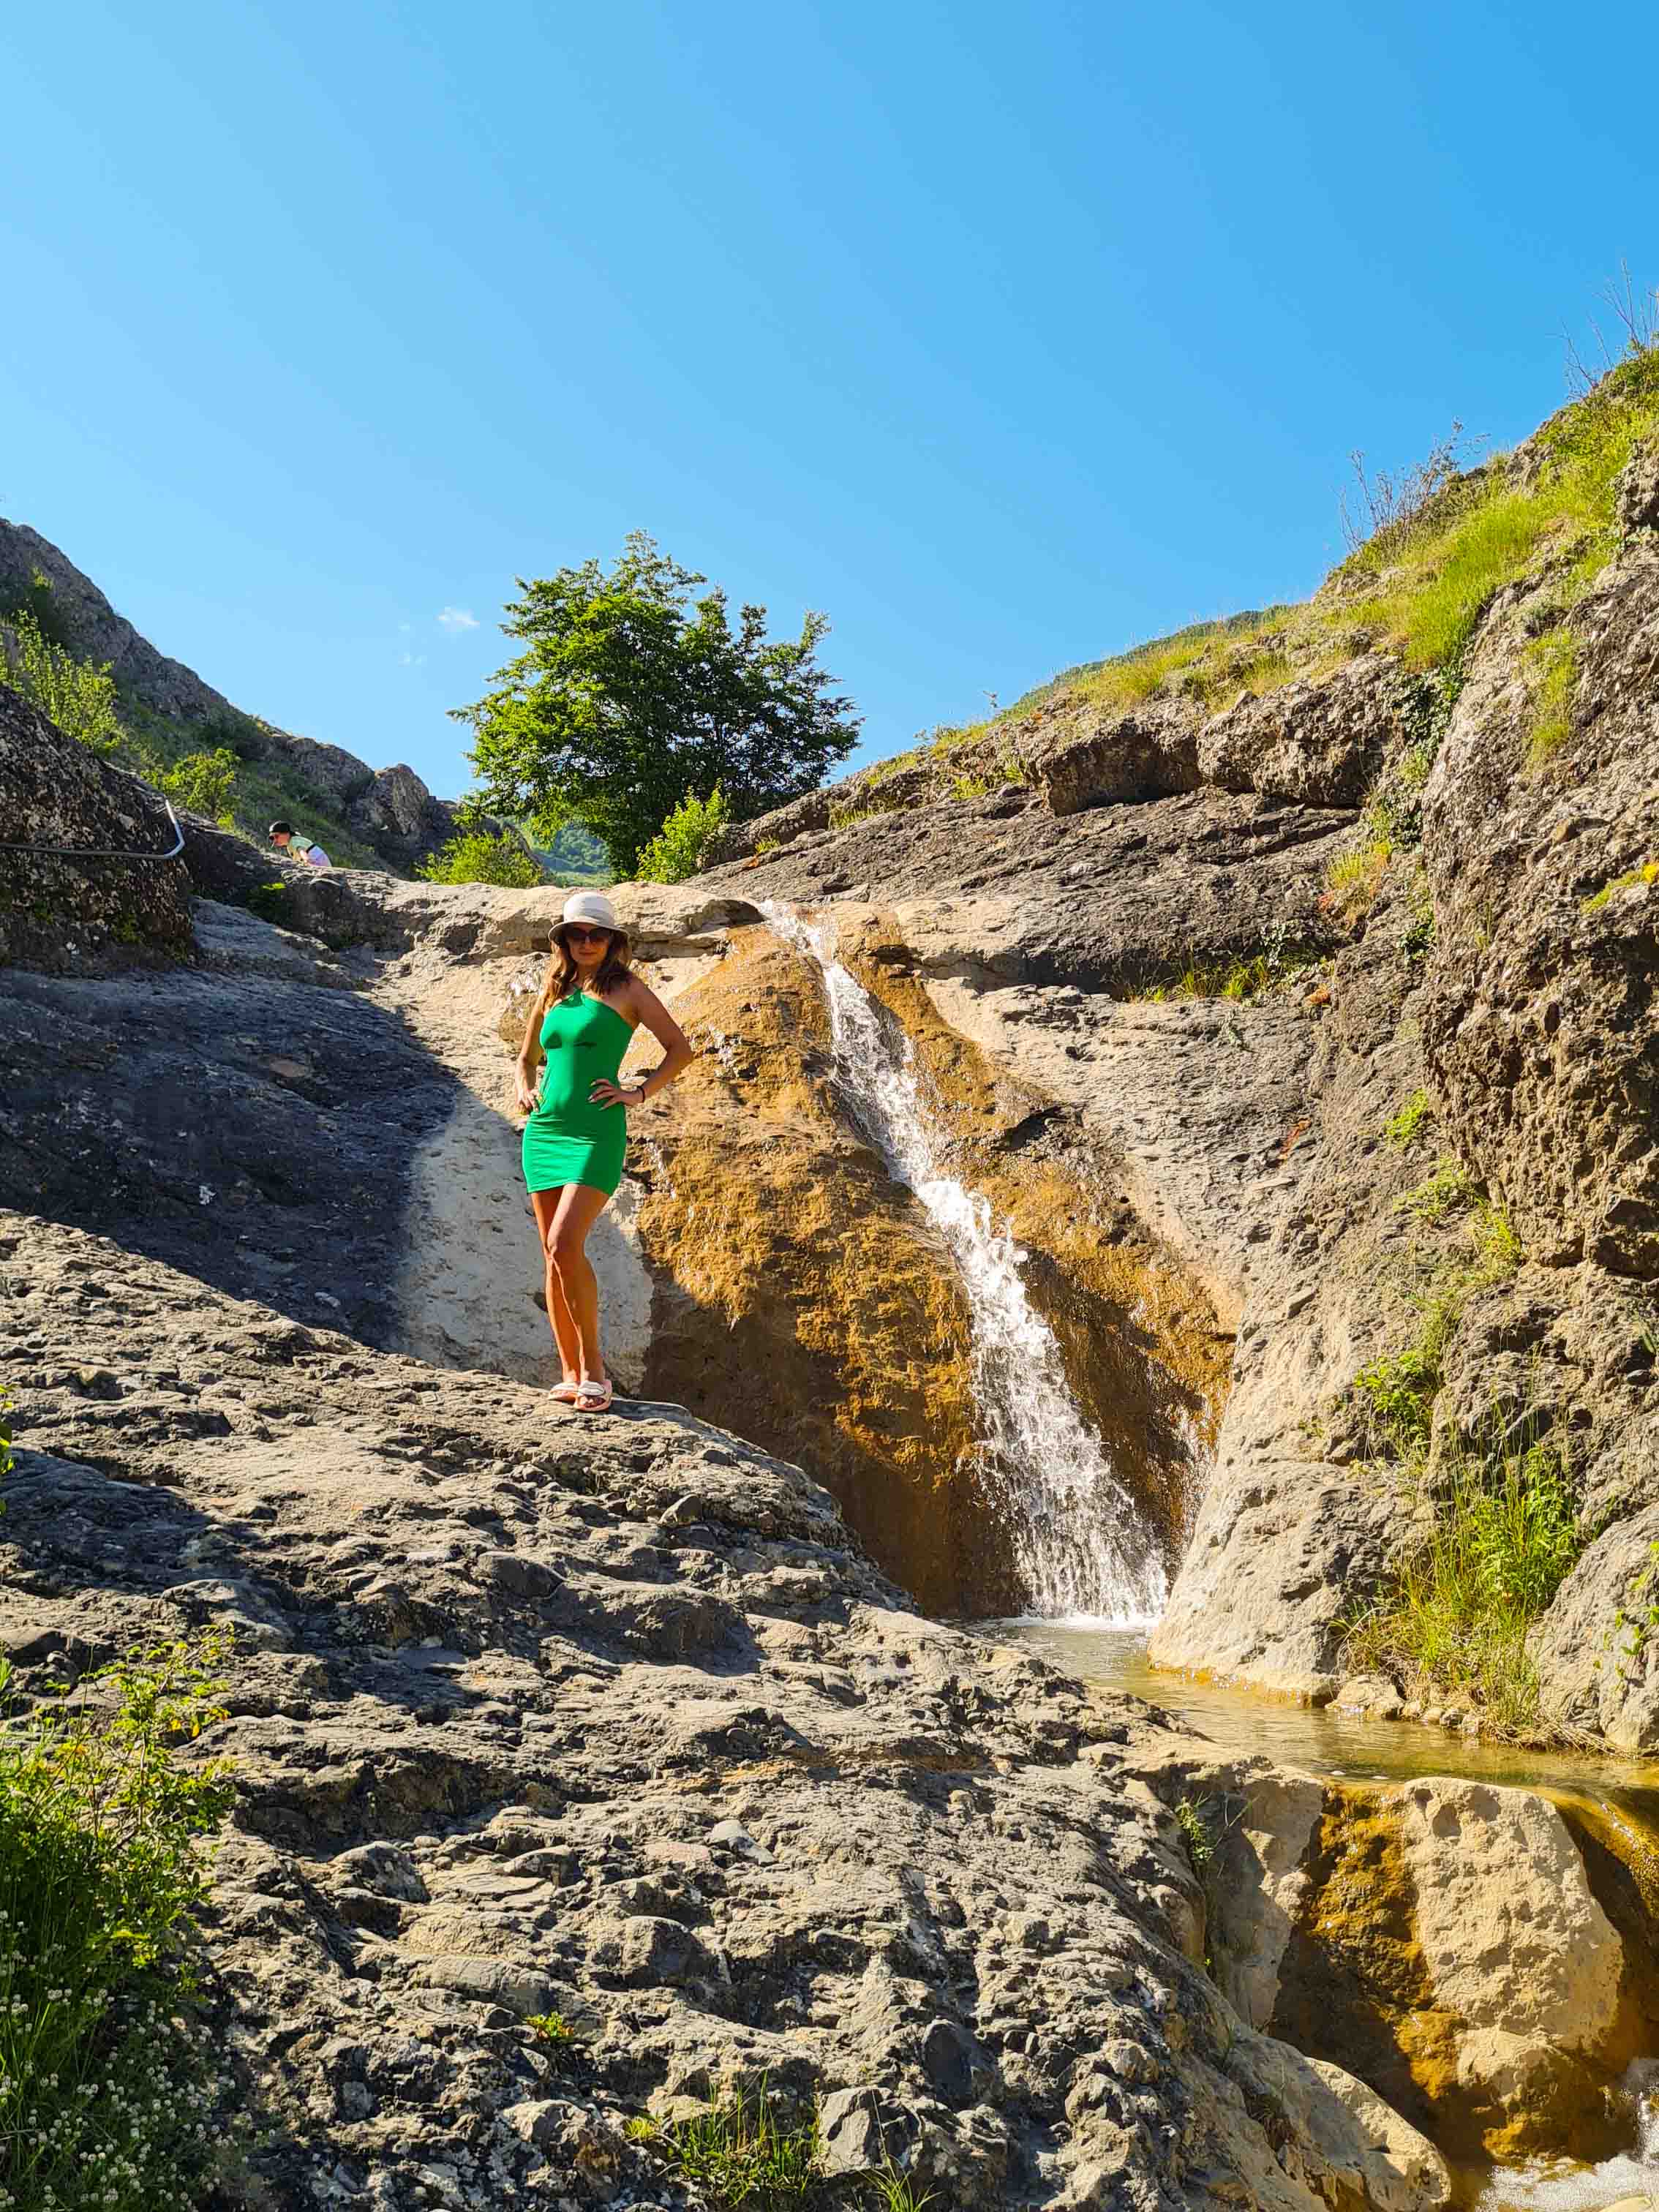 Арпатские водопады. Автопешеходная экскурсия на Арпатские водопады и озеро Панагия в Зеленогорье | JeepTrip